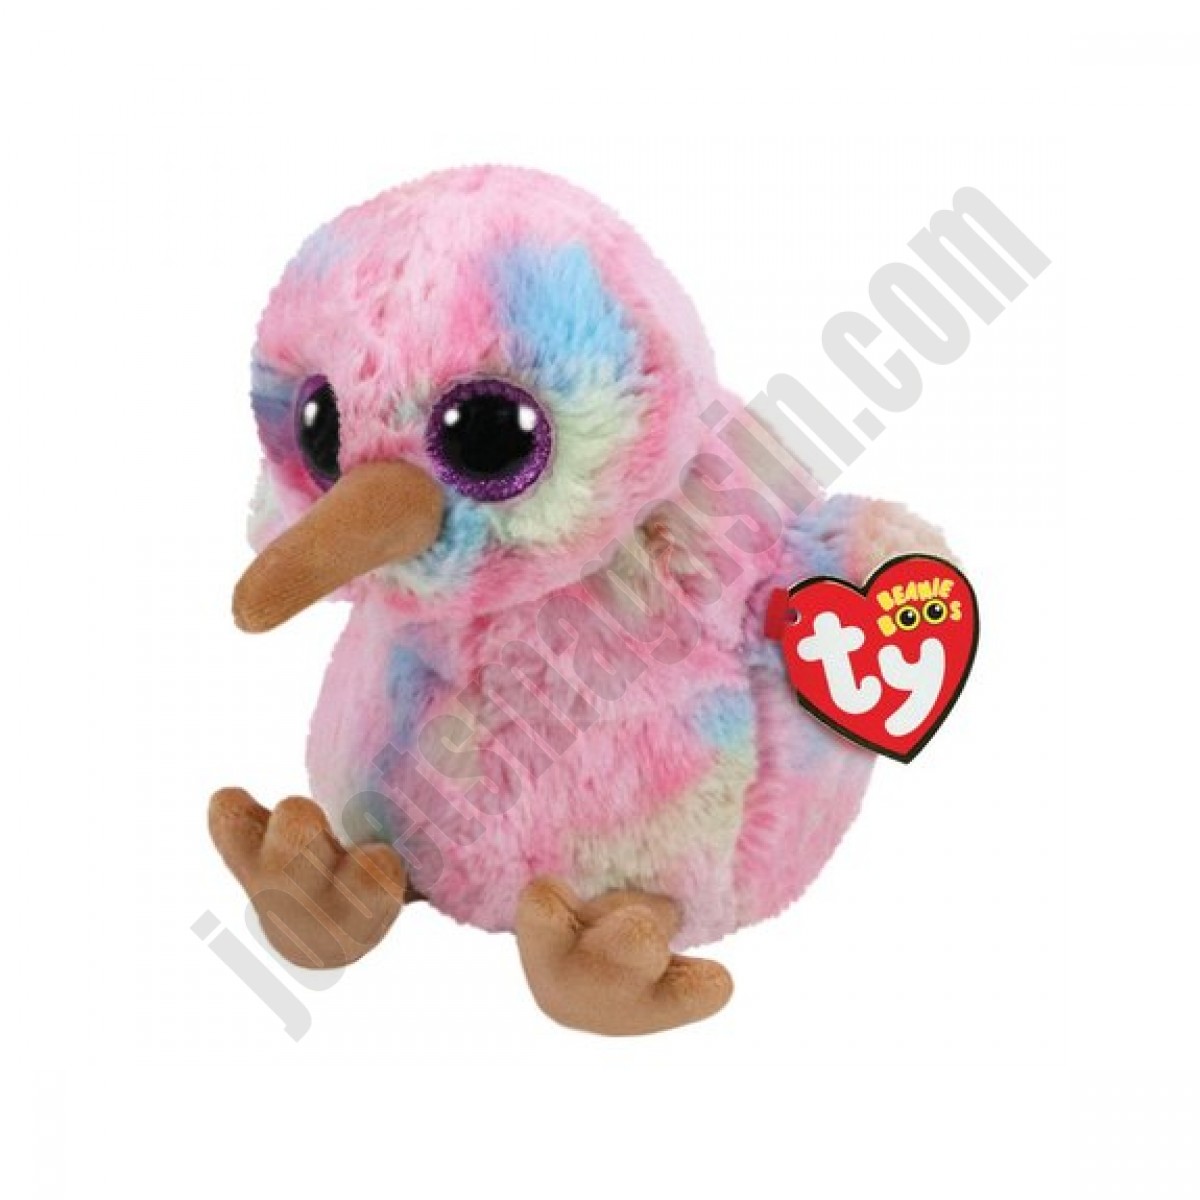 Beanie Boo's - Kiwi l'oiseau de 15 cm ◆◆◆ Nouveau - Beanie Boo's - Kiwi l'oiseau de 15 cm ◆◆◆ Nouveau